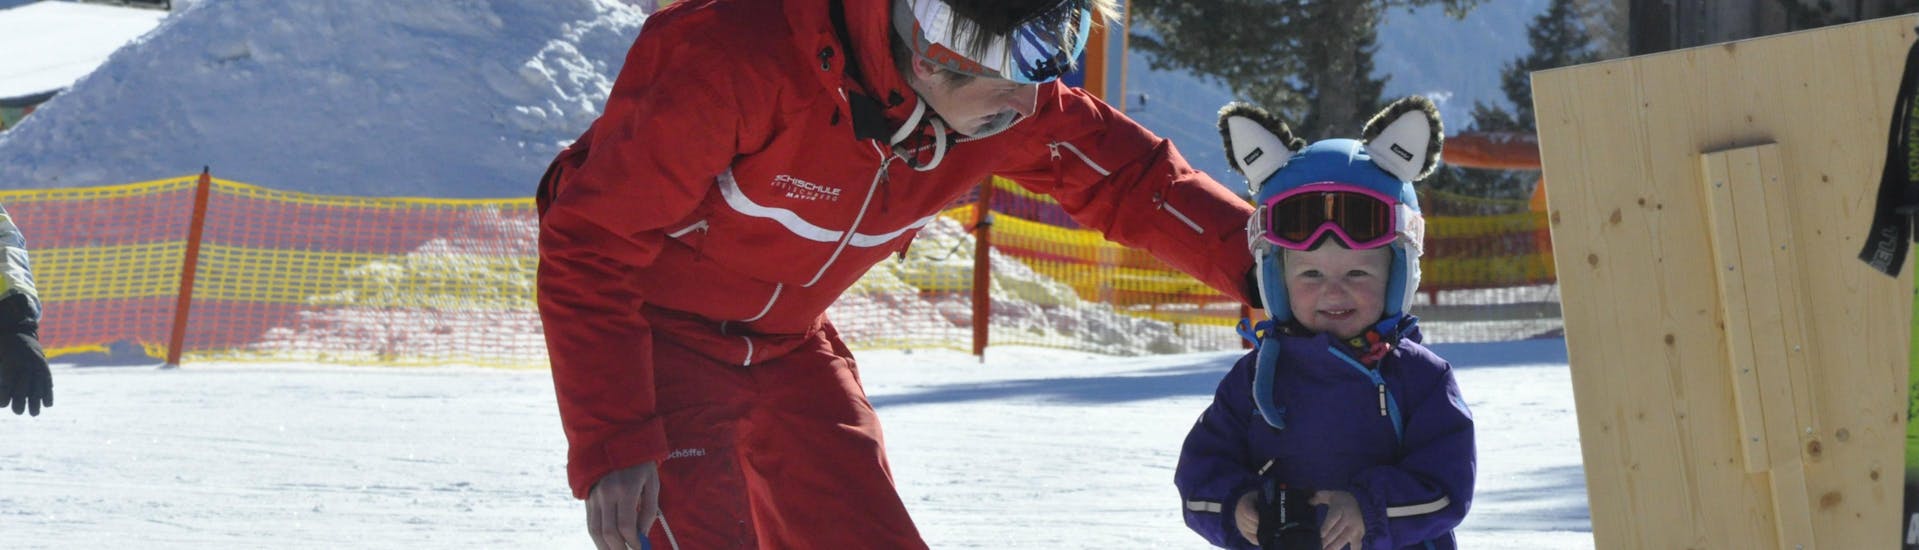 Lezioni private di sci per bambini per tutti i livelli con Skischule Kreischberg - Mayer.